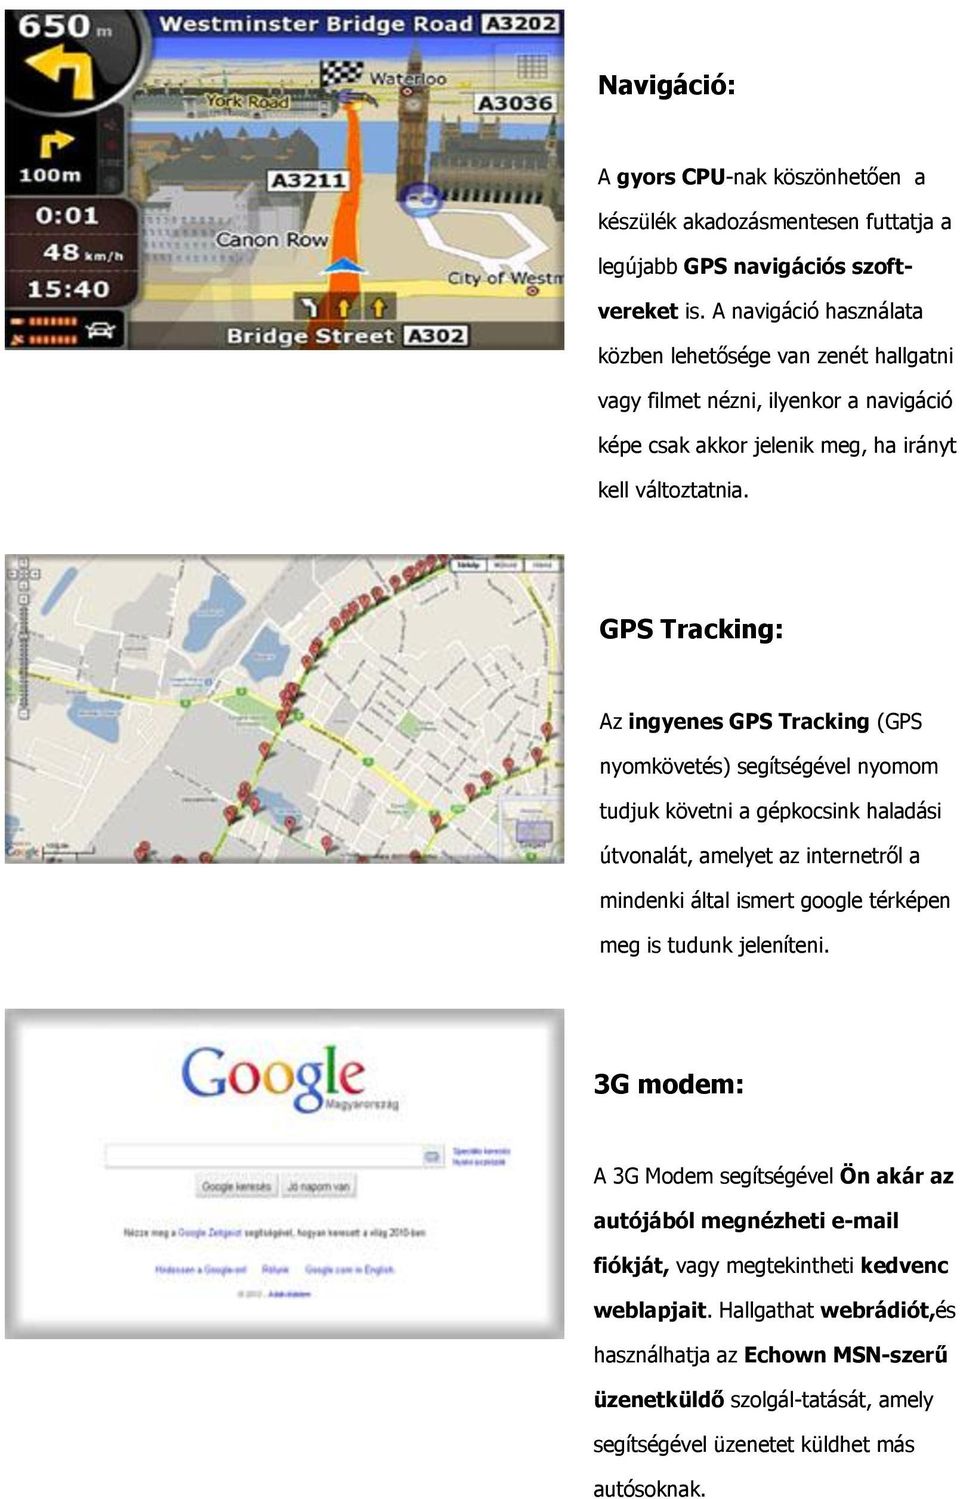 GPS Tracking: Az ingyenes GPS Tracking (GPS nyomkövetés) segítségével nyomom tudjuk követni a gépkocsink haladási útvonalát, amelyet az internetről a mindenki által ismert google térképen